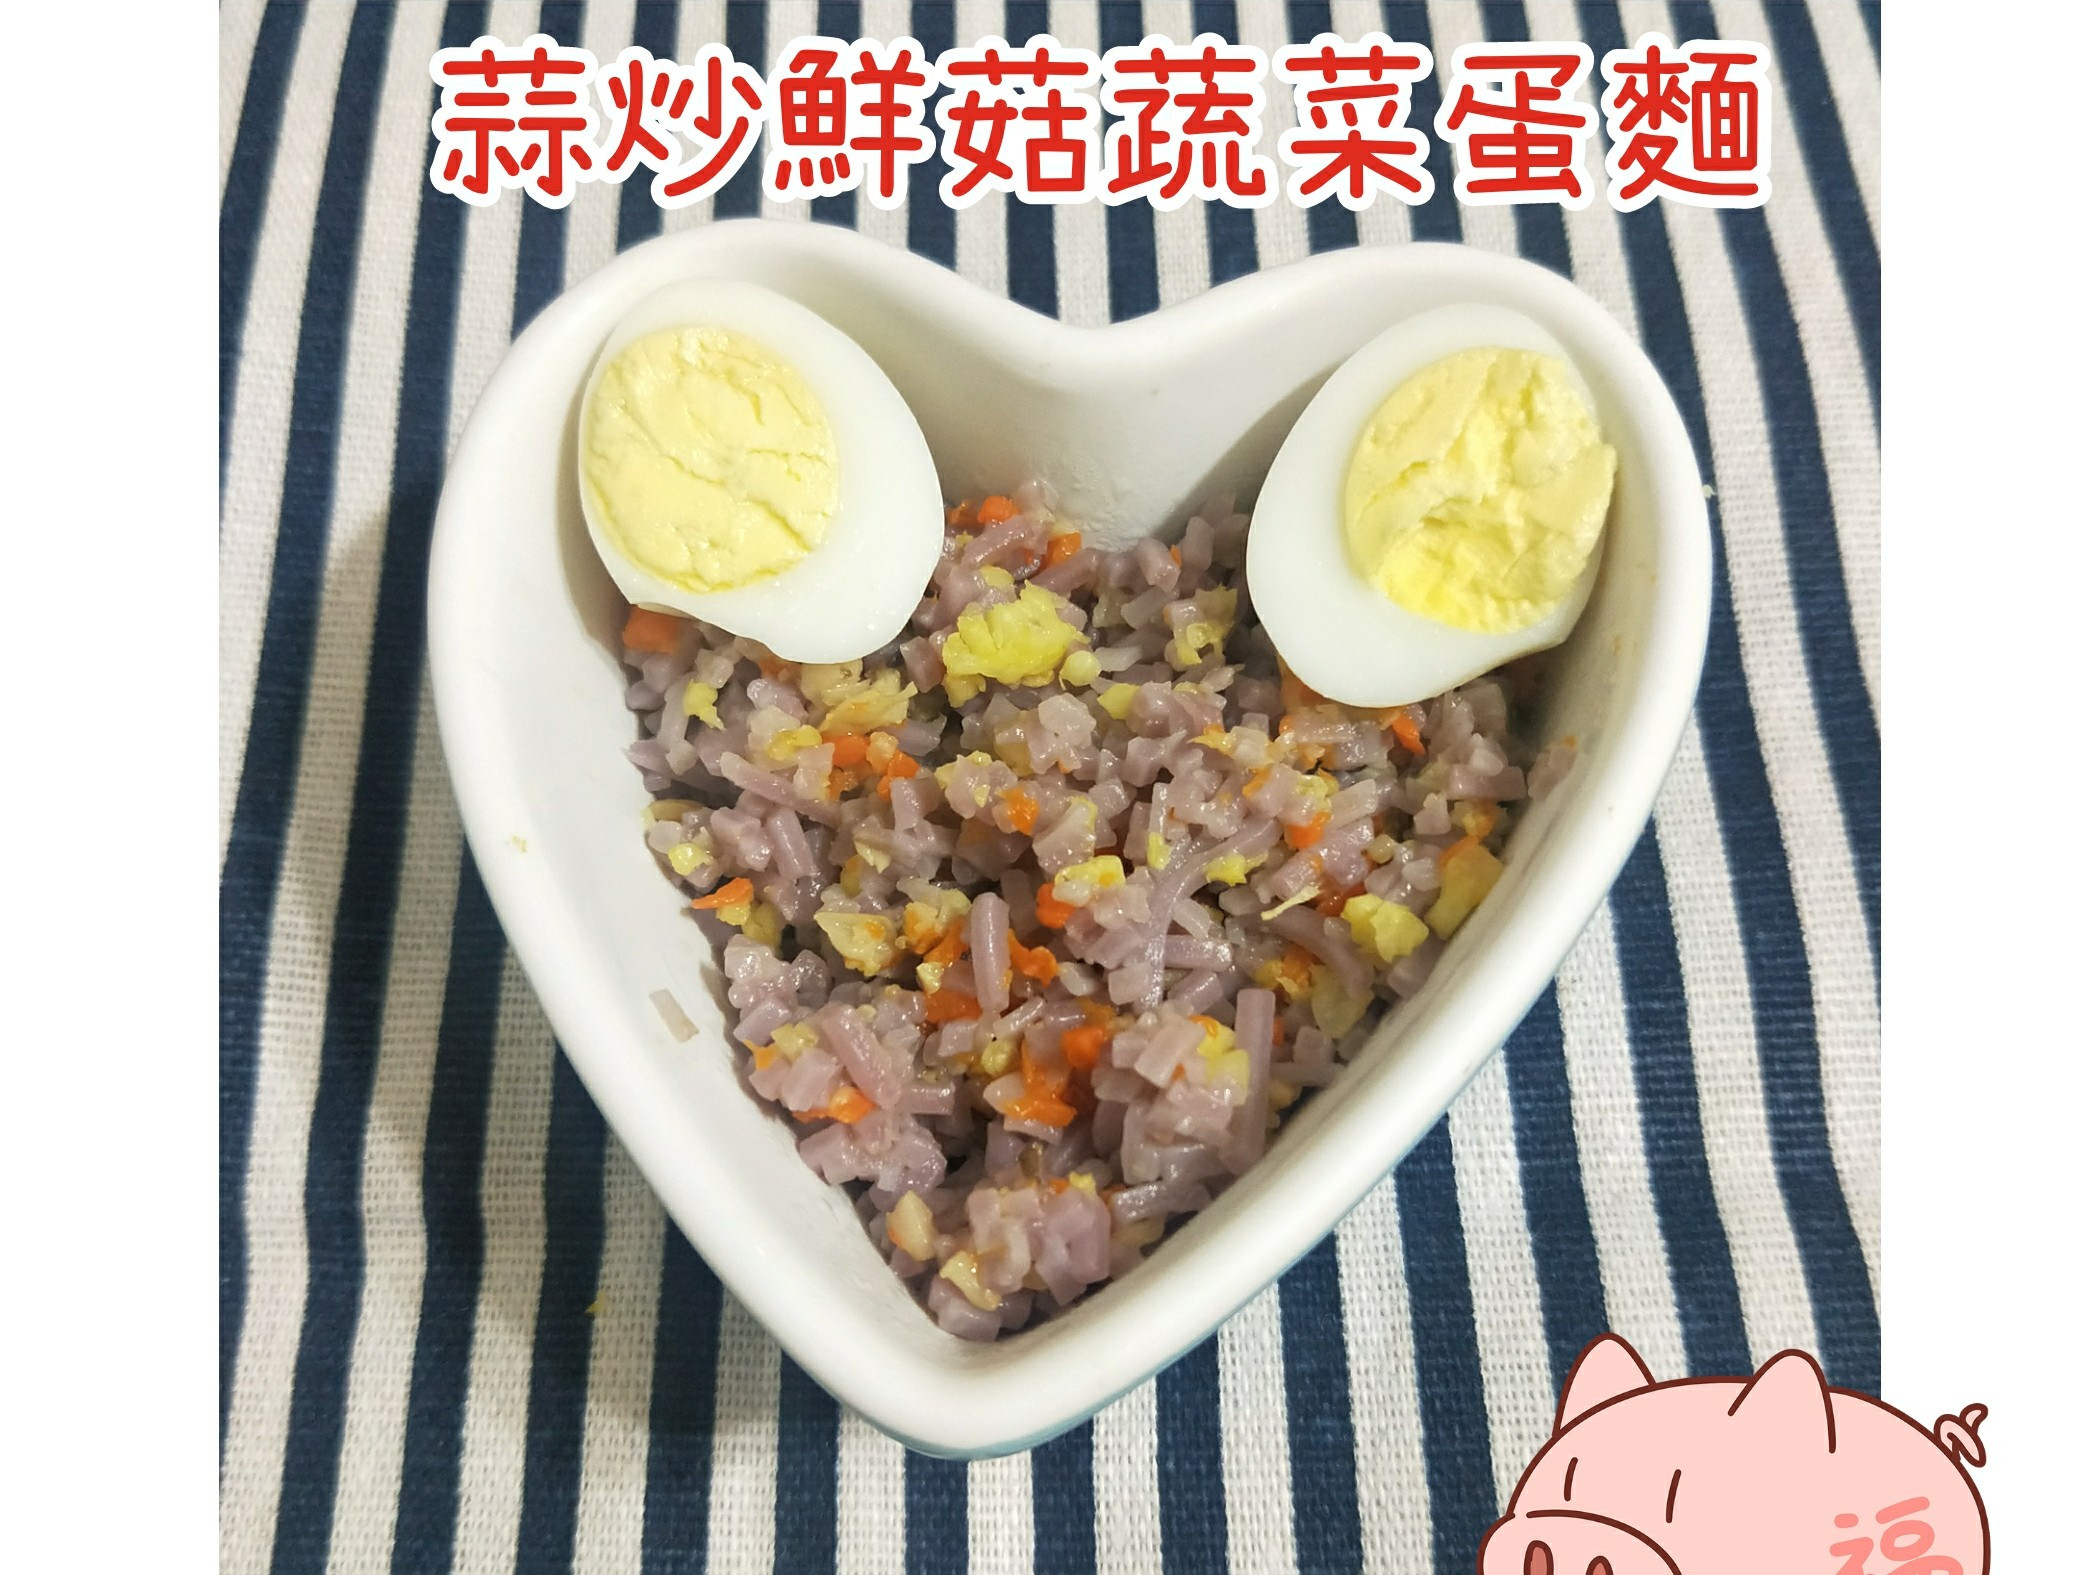 副食品-蒜炒鮮菇蔬菜蛋麵-寶寶麵
